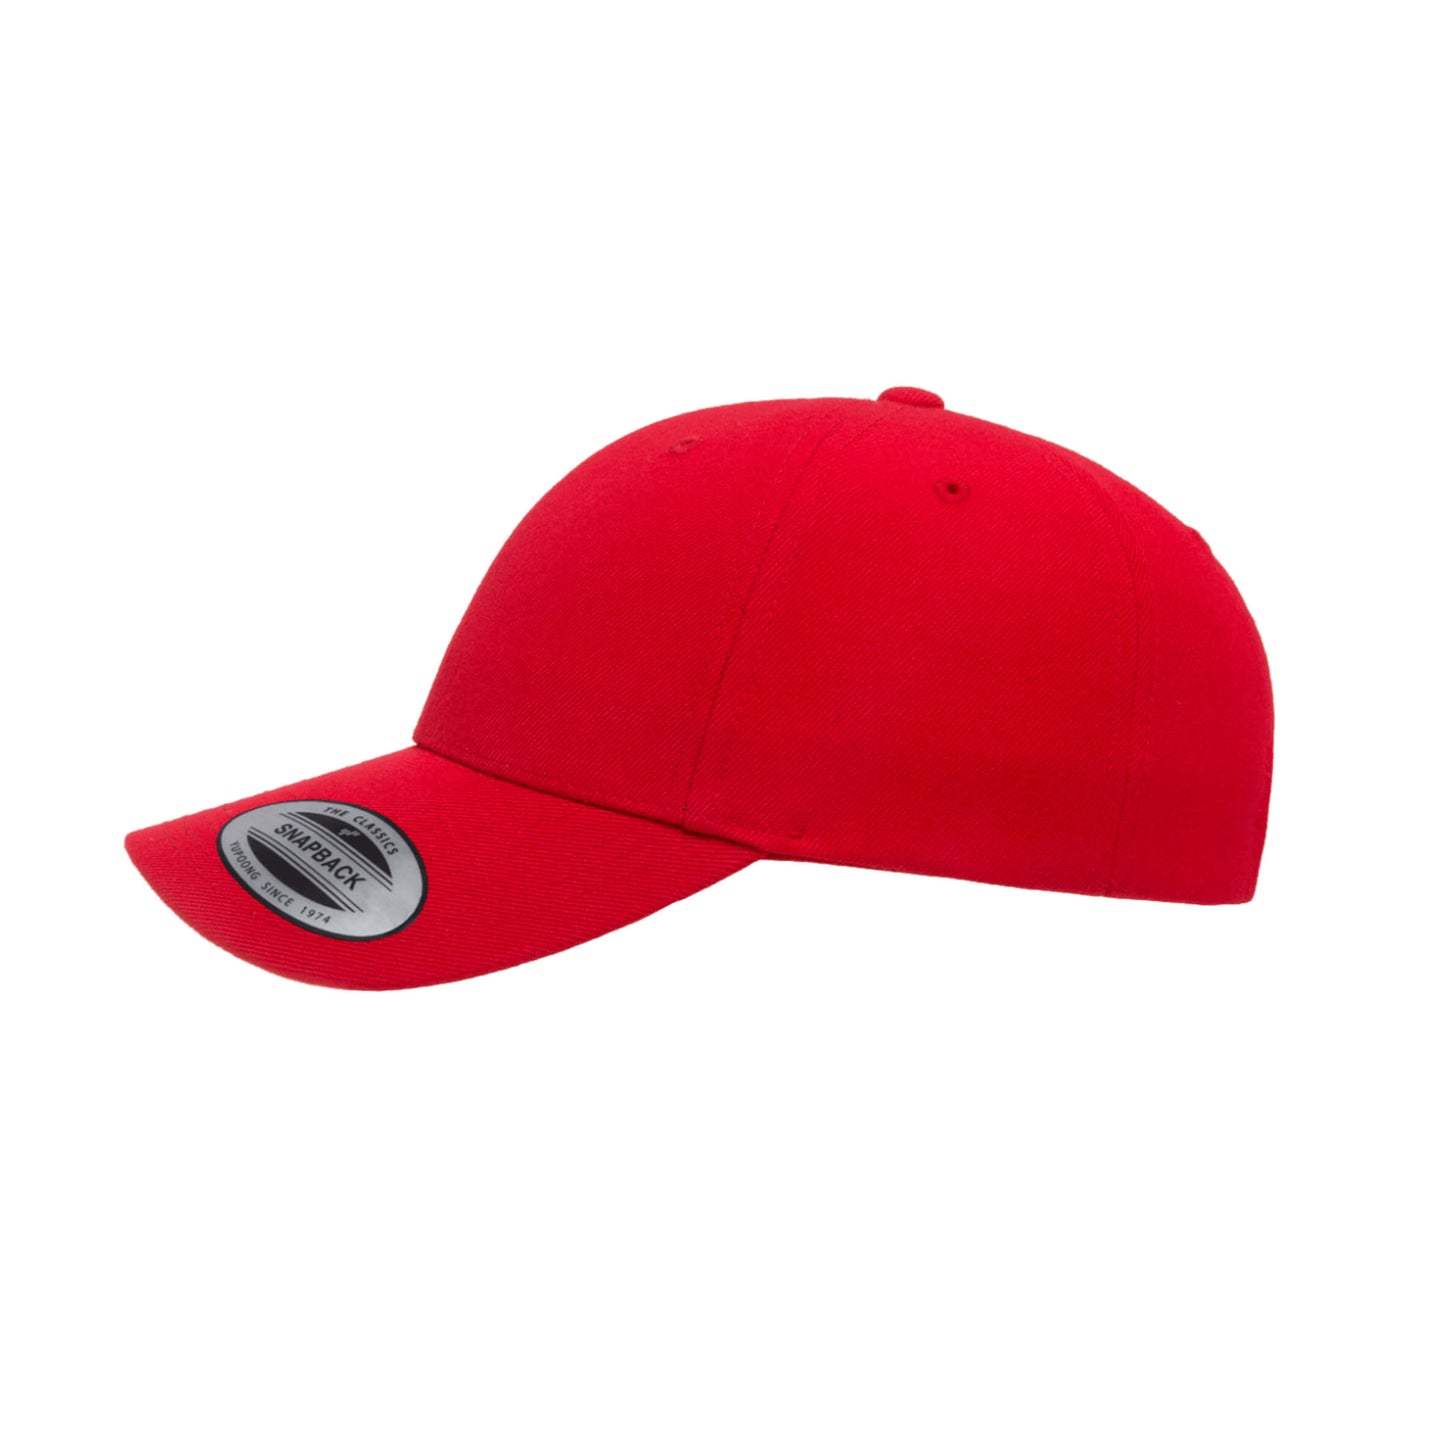 6789C-RED Curve Peak Snapback Red Cap